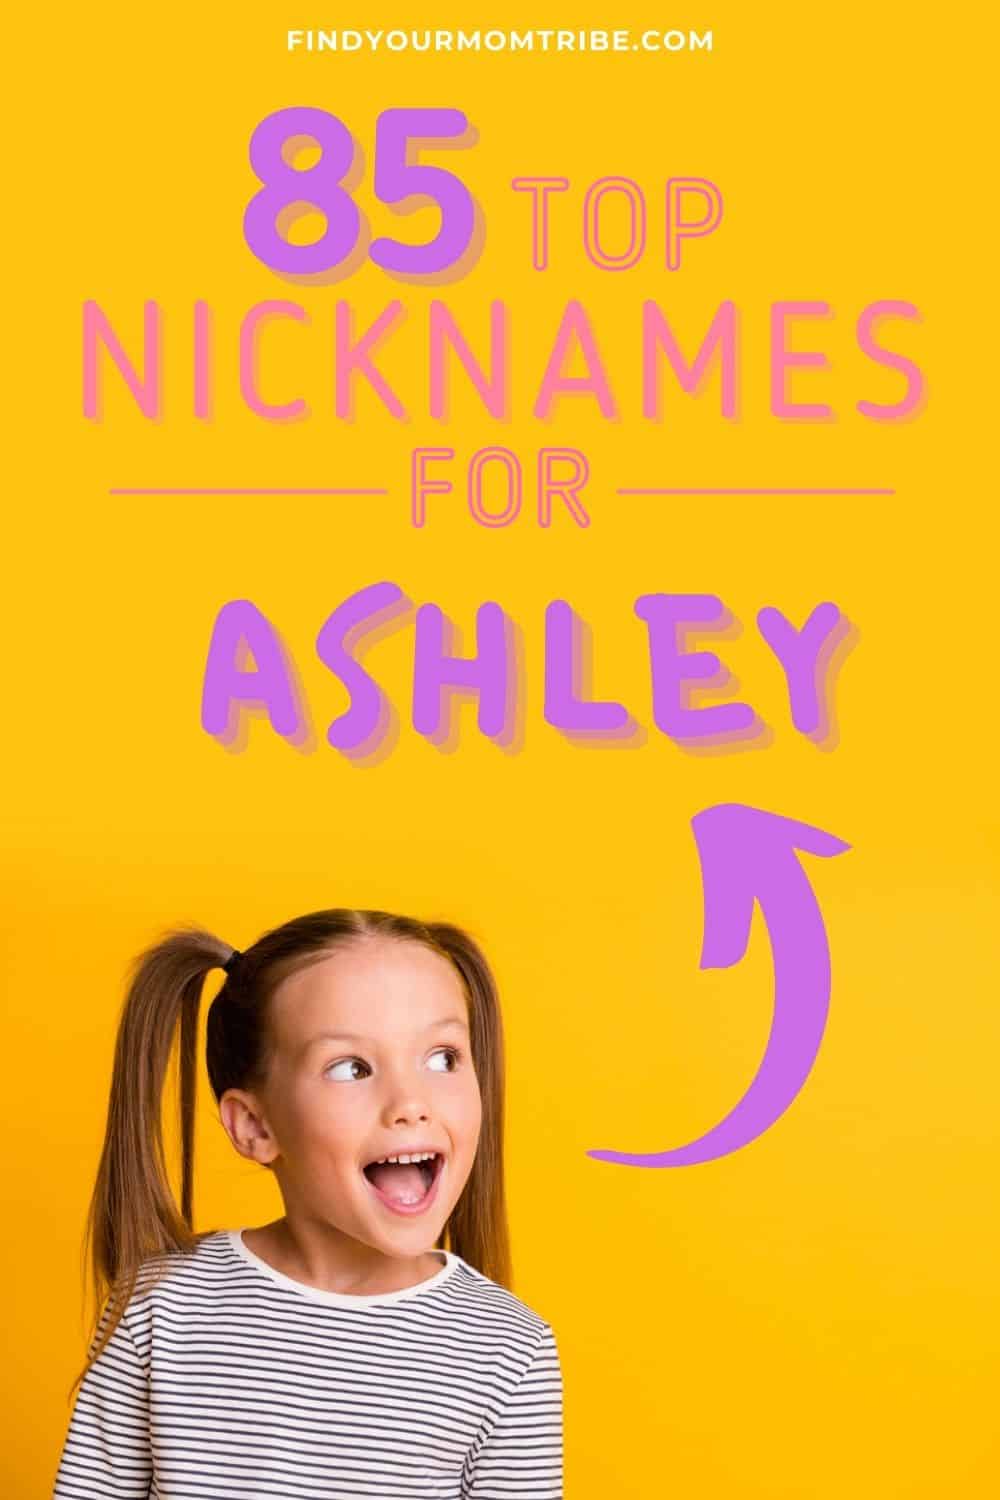 nicknames for Ashley pinterest